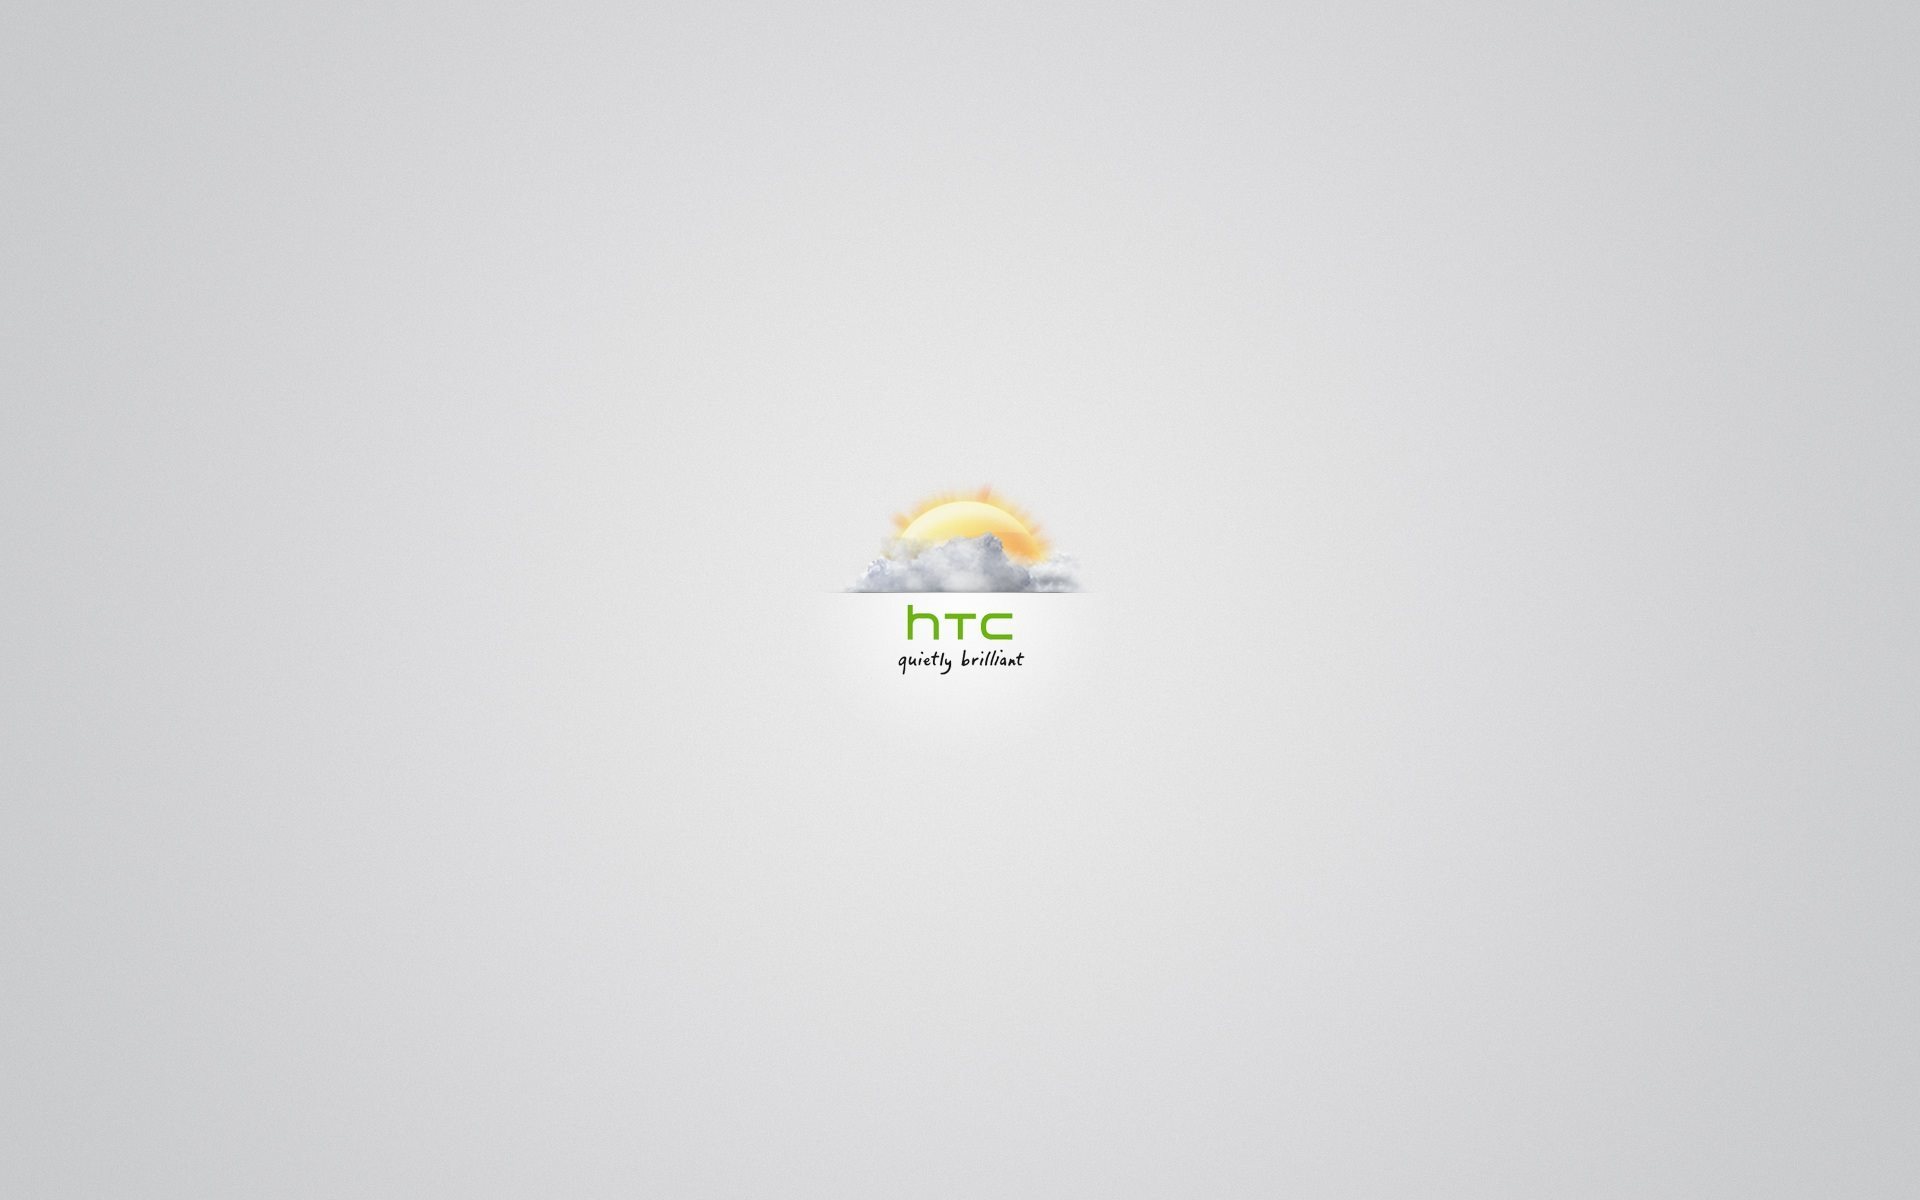 ダウンロード画像 Htc ロゴ Astici 画面の解像度 19x10 壁紙デスクトップ上